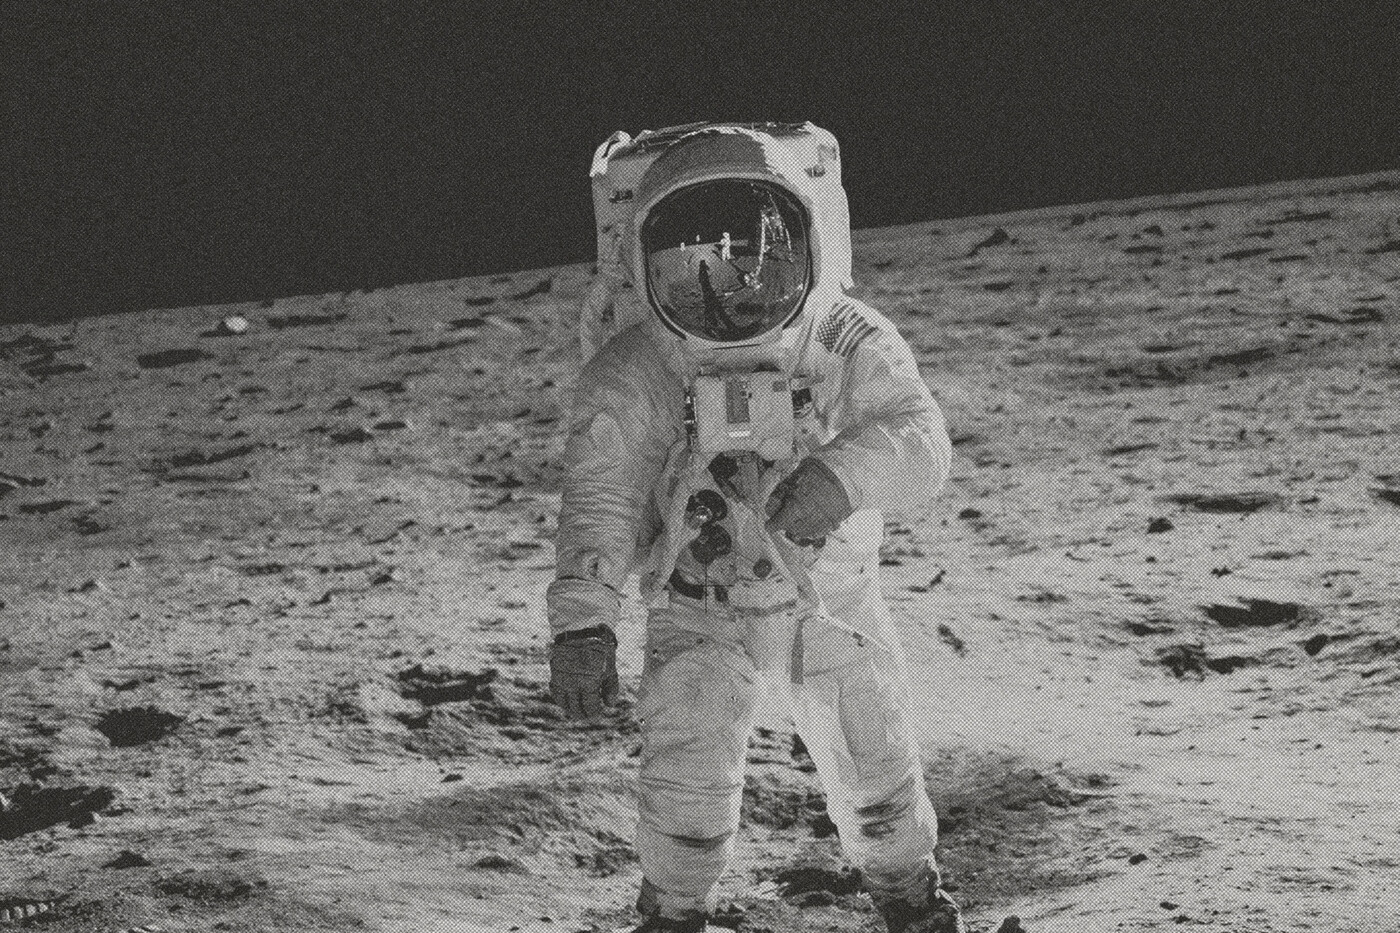 Foto in Schwarz-Weiss: Ein Astronaut auf dem Mond.